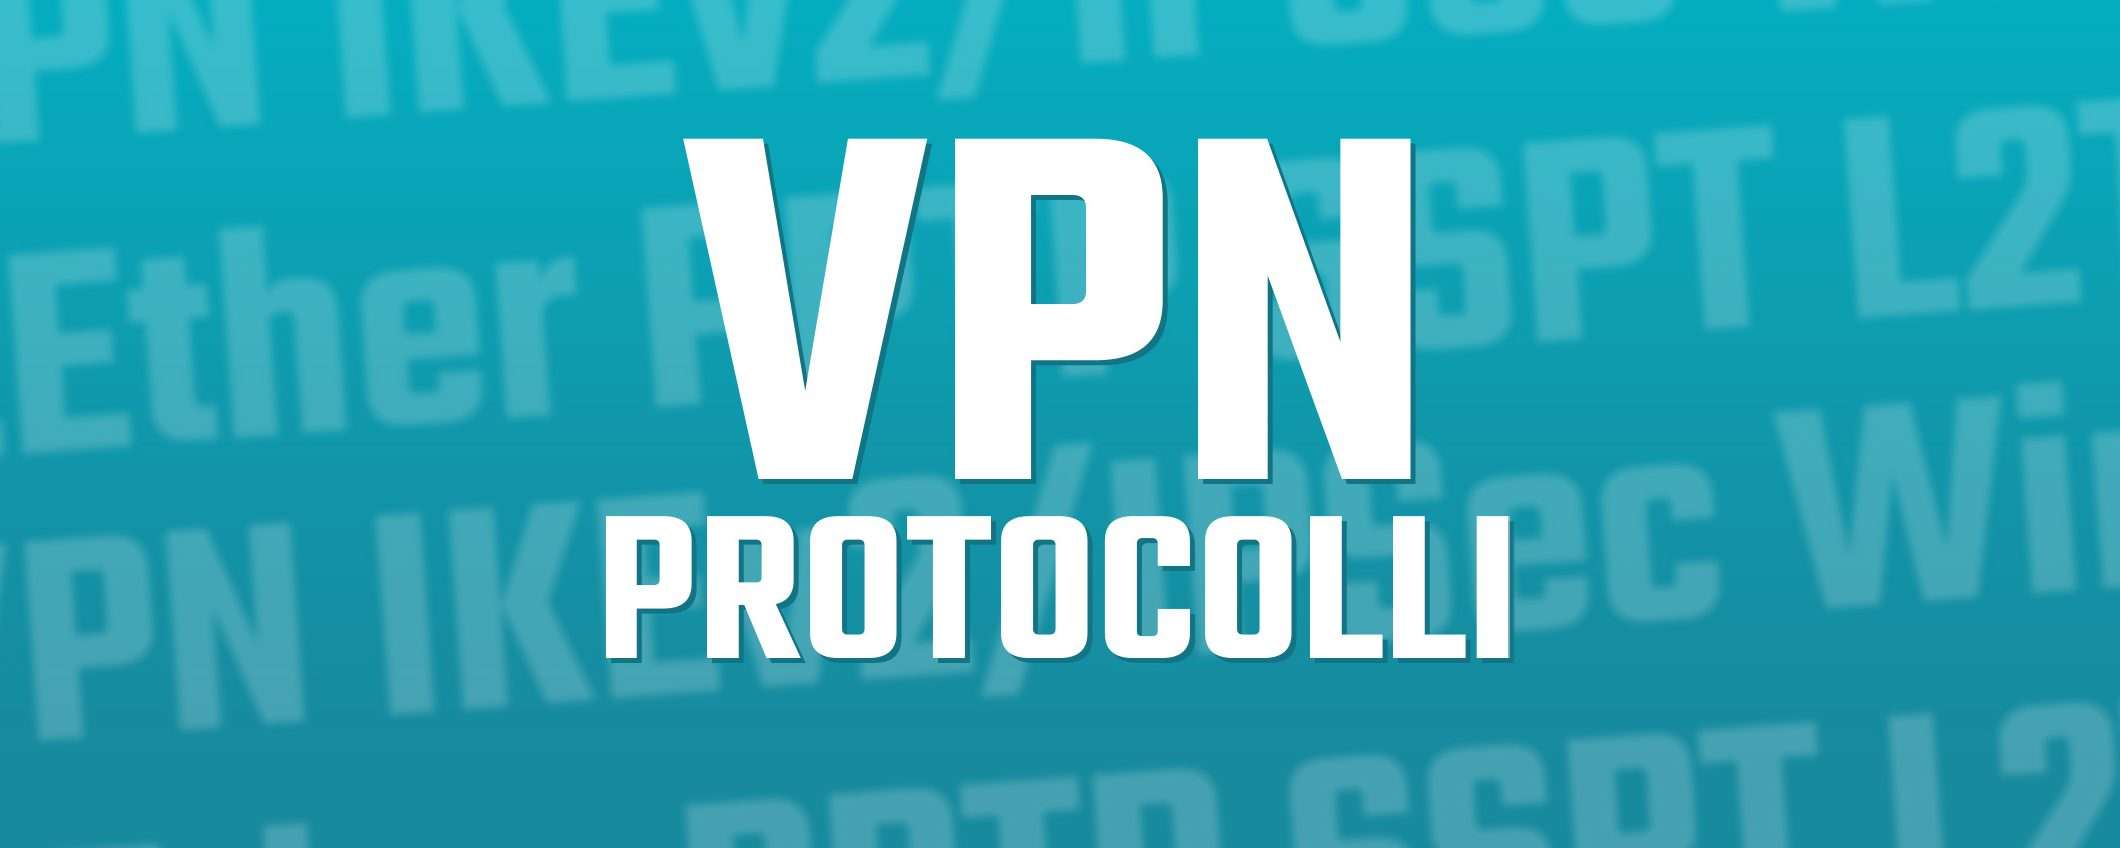 VPN e protocolli: qual è il migliore?